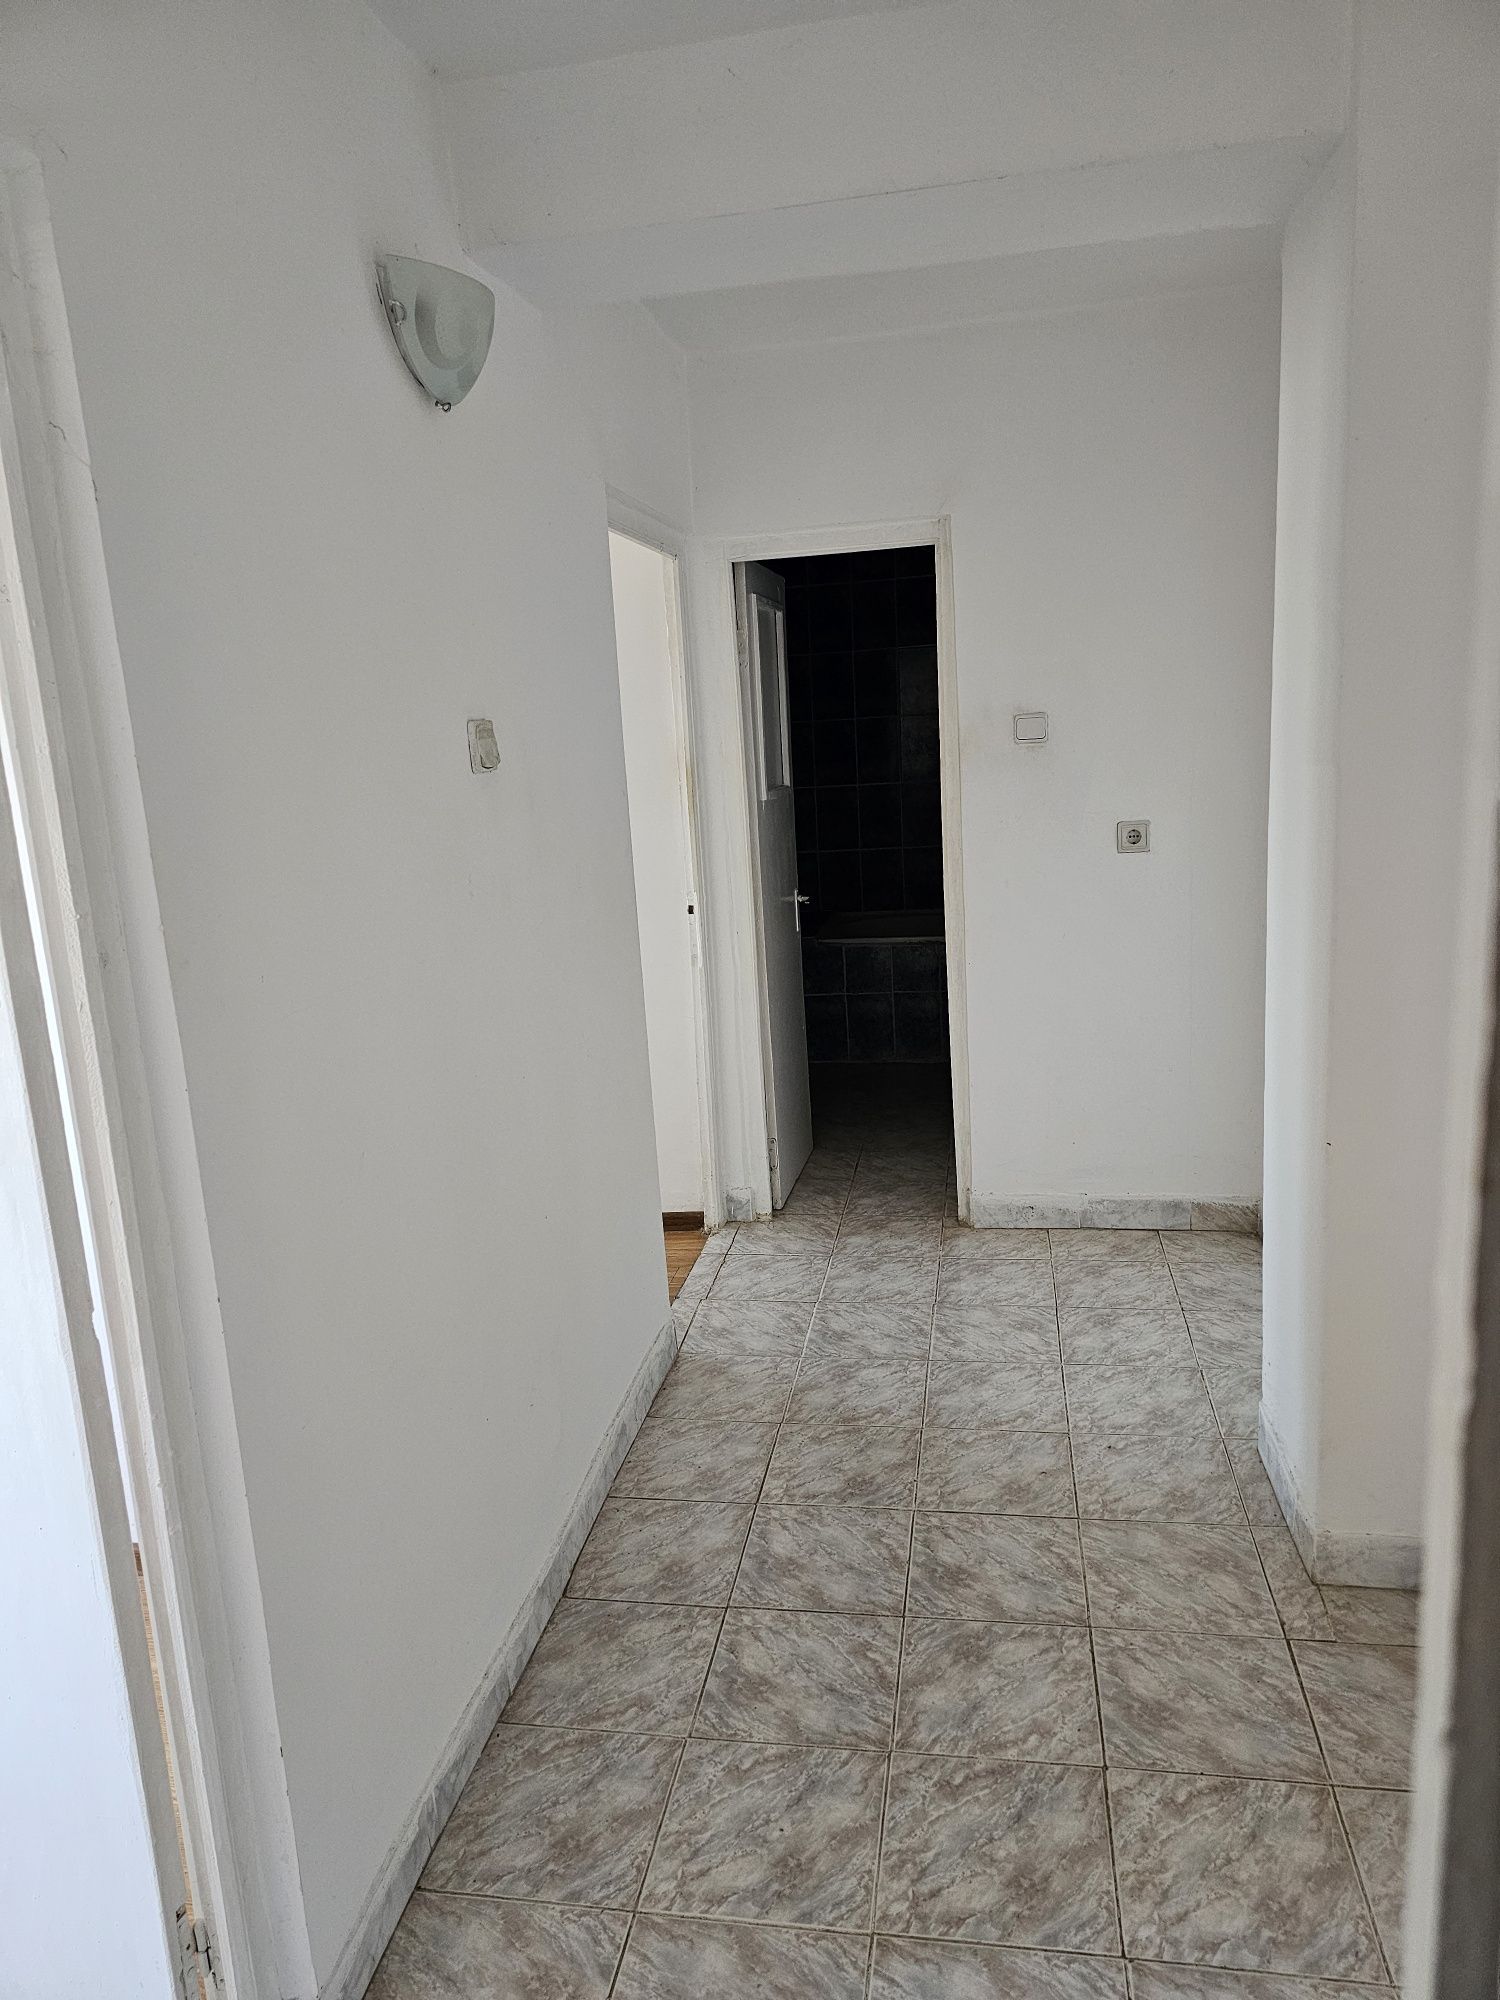 Proprietar Vand Apartament 3 camere decomandat Slobozia